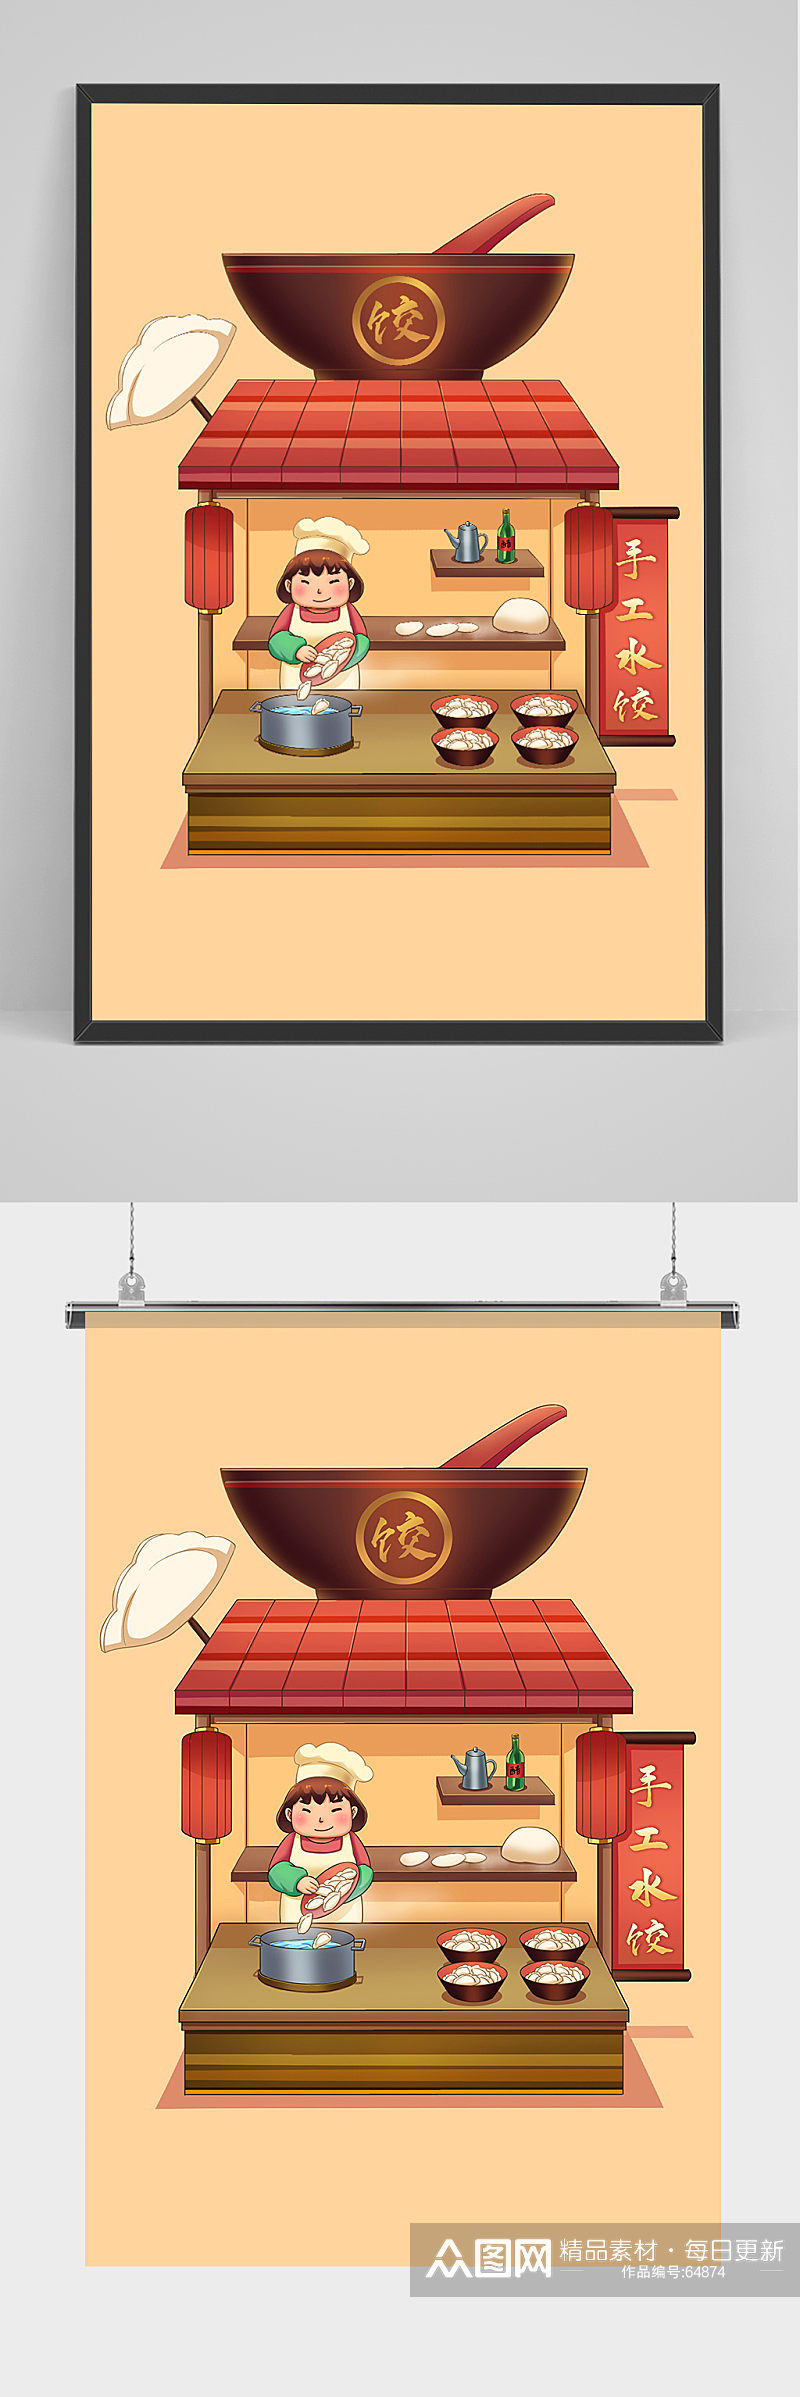 中国传统美食手工水饺店插画素材